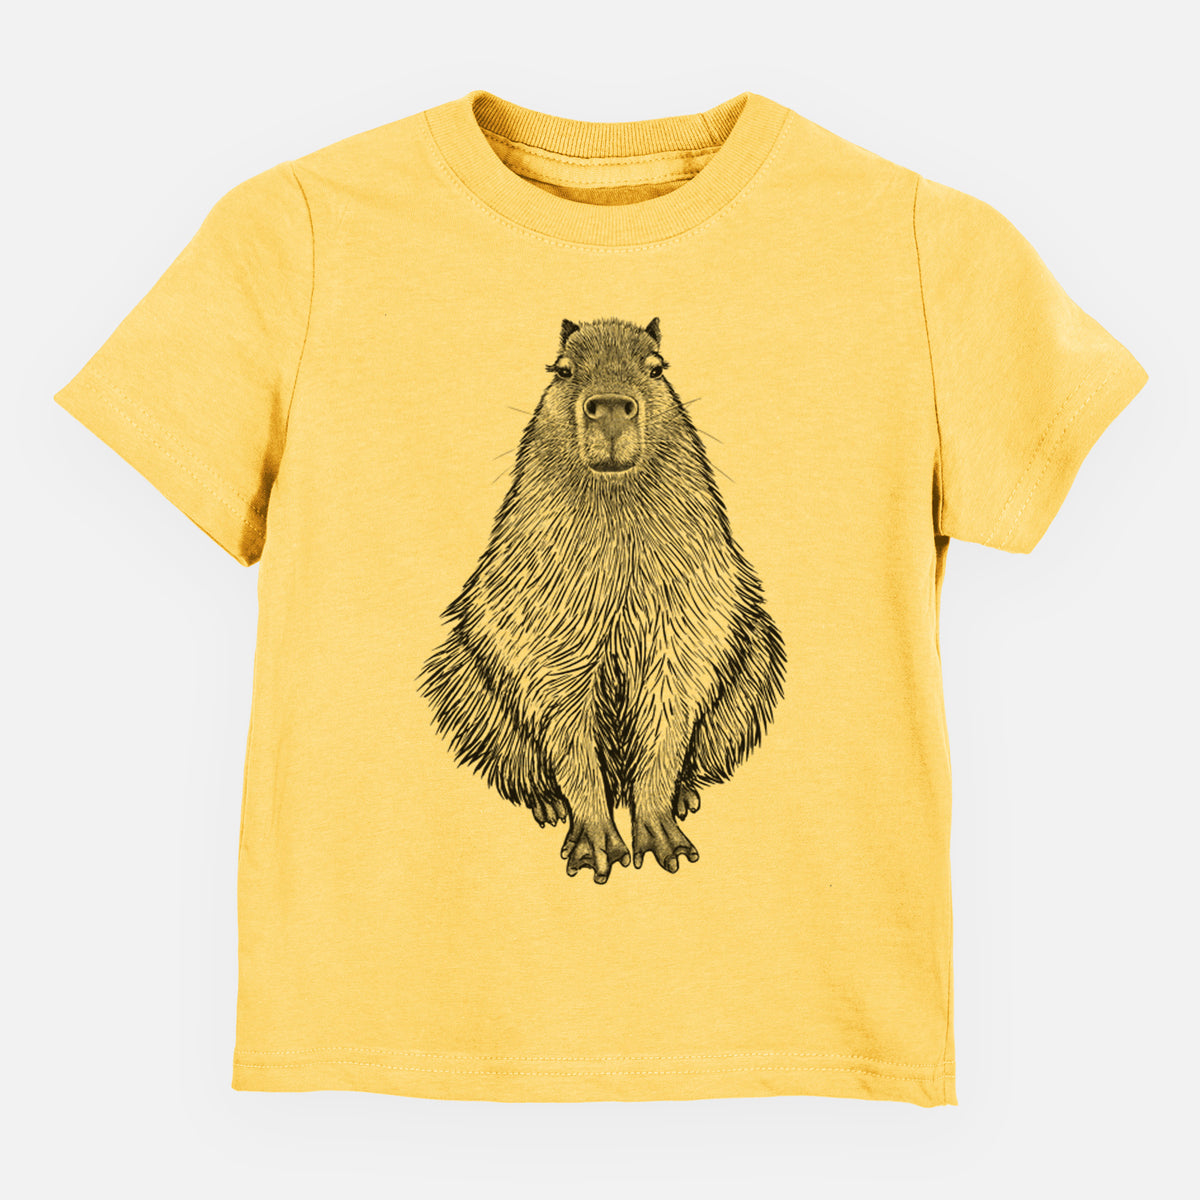 Capybara - Hydrochoerus hydrochaeris - Kids Shirt